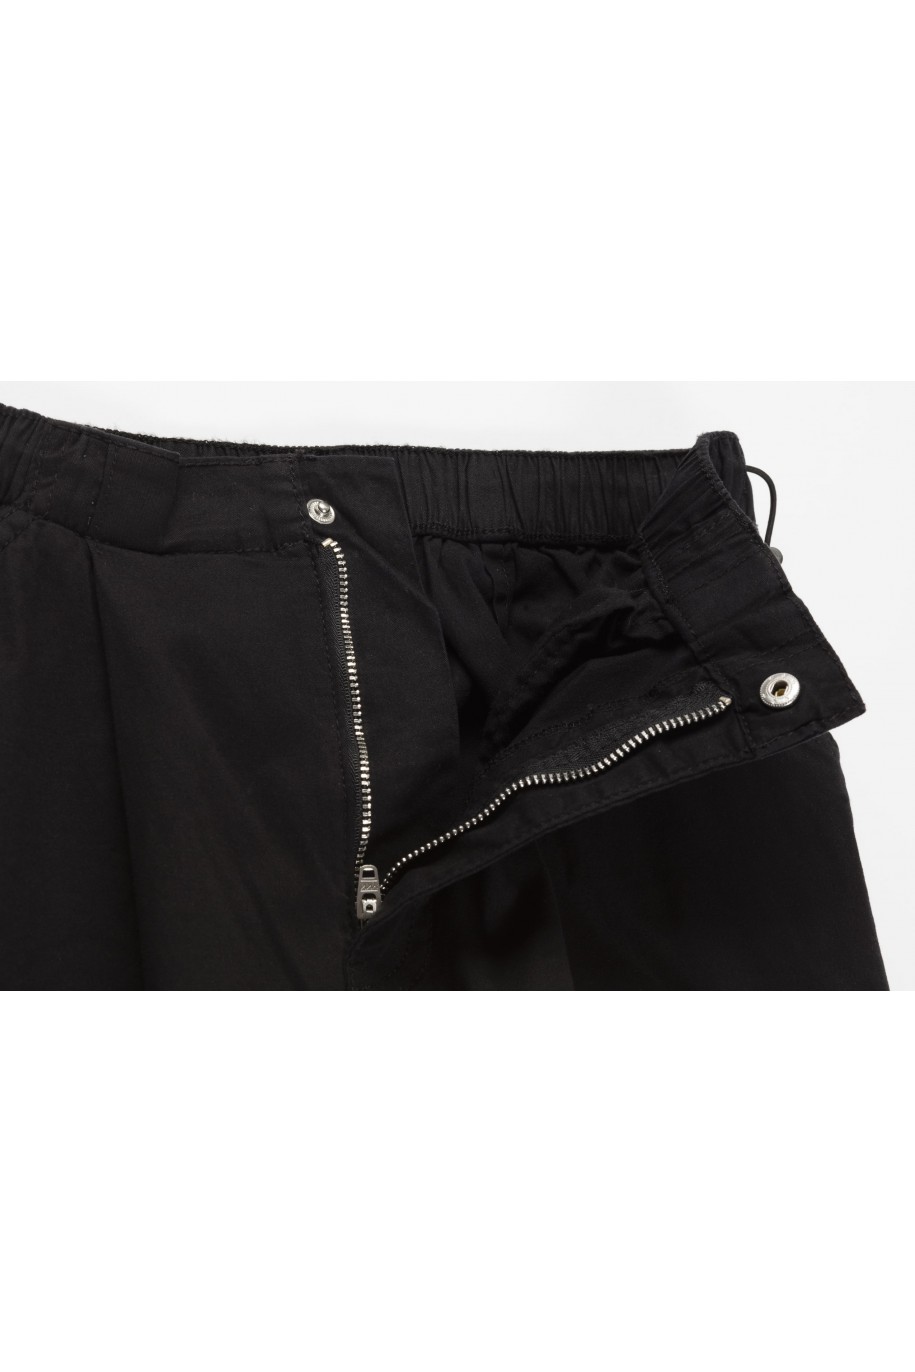 Czarne spodnie typu parachute z zaszewkami na nogawkach - 46056